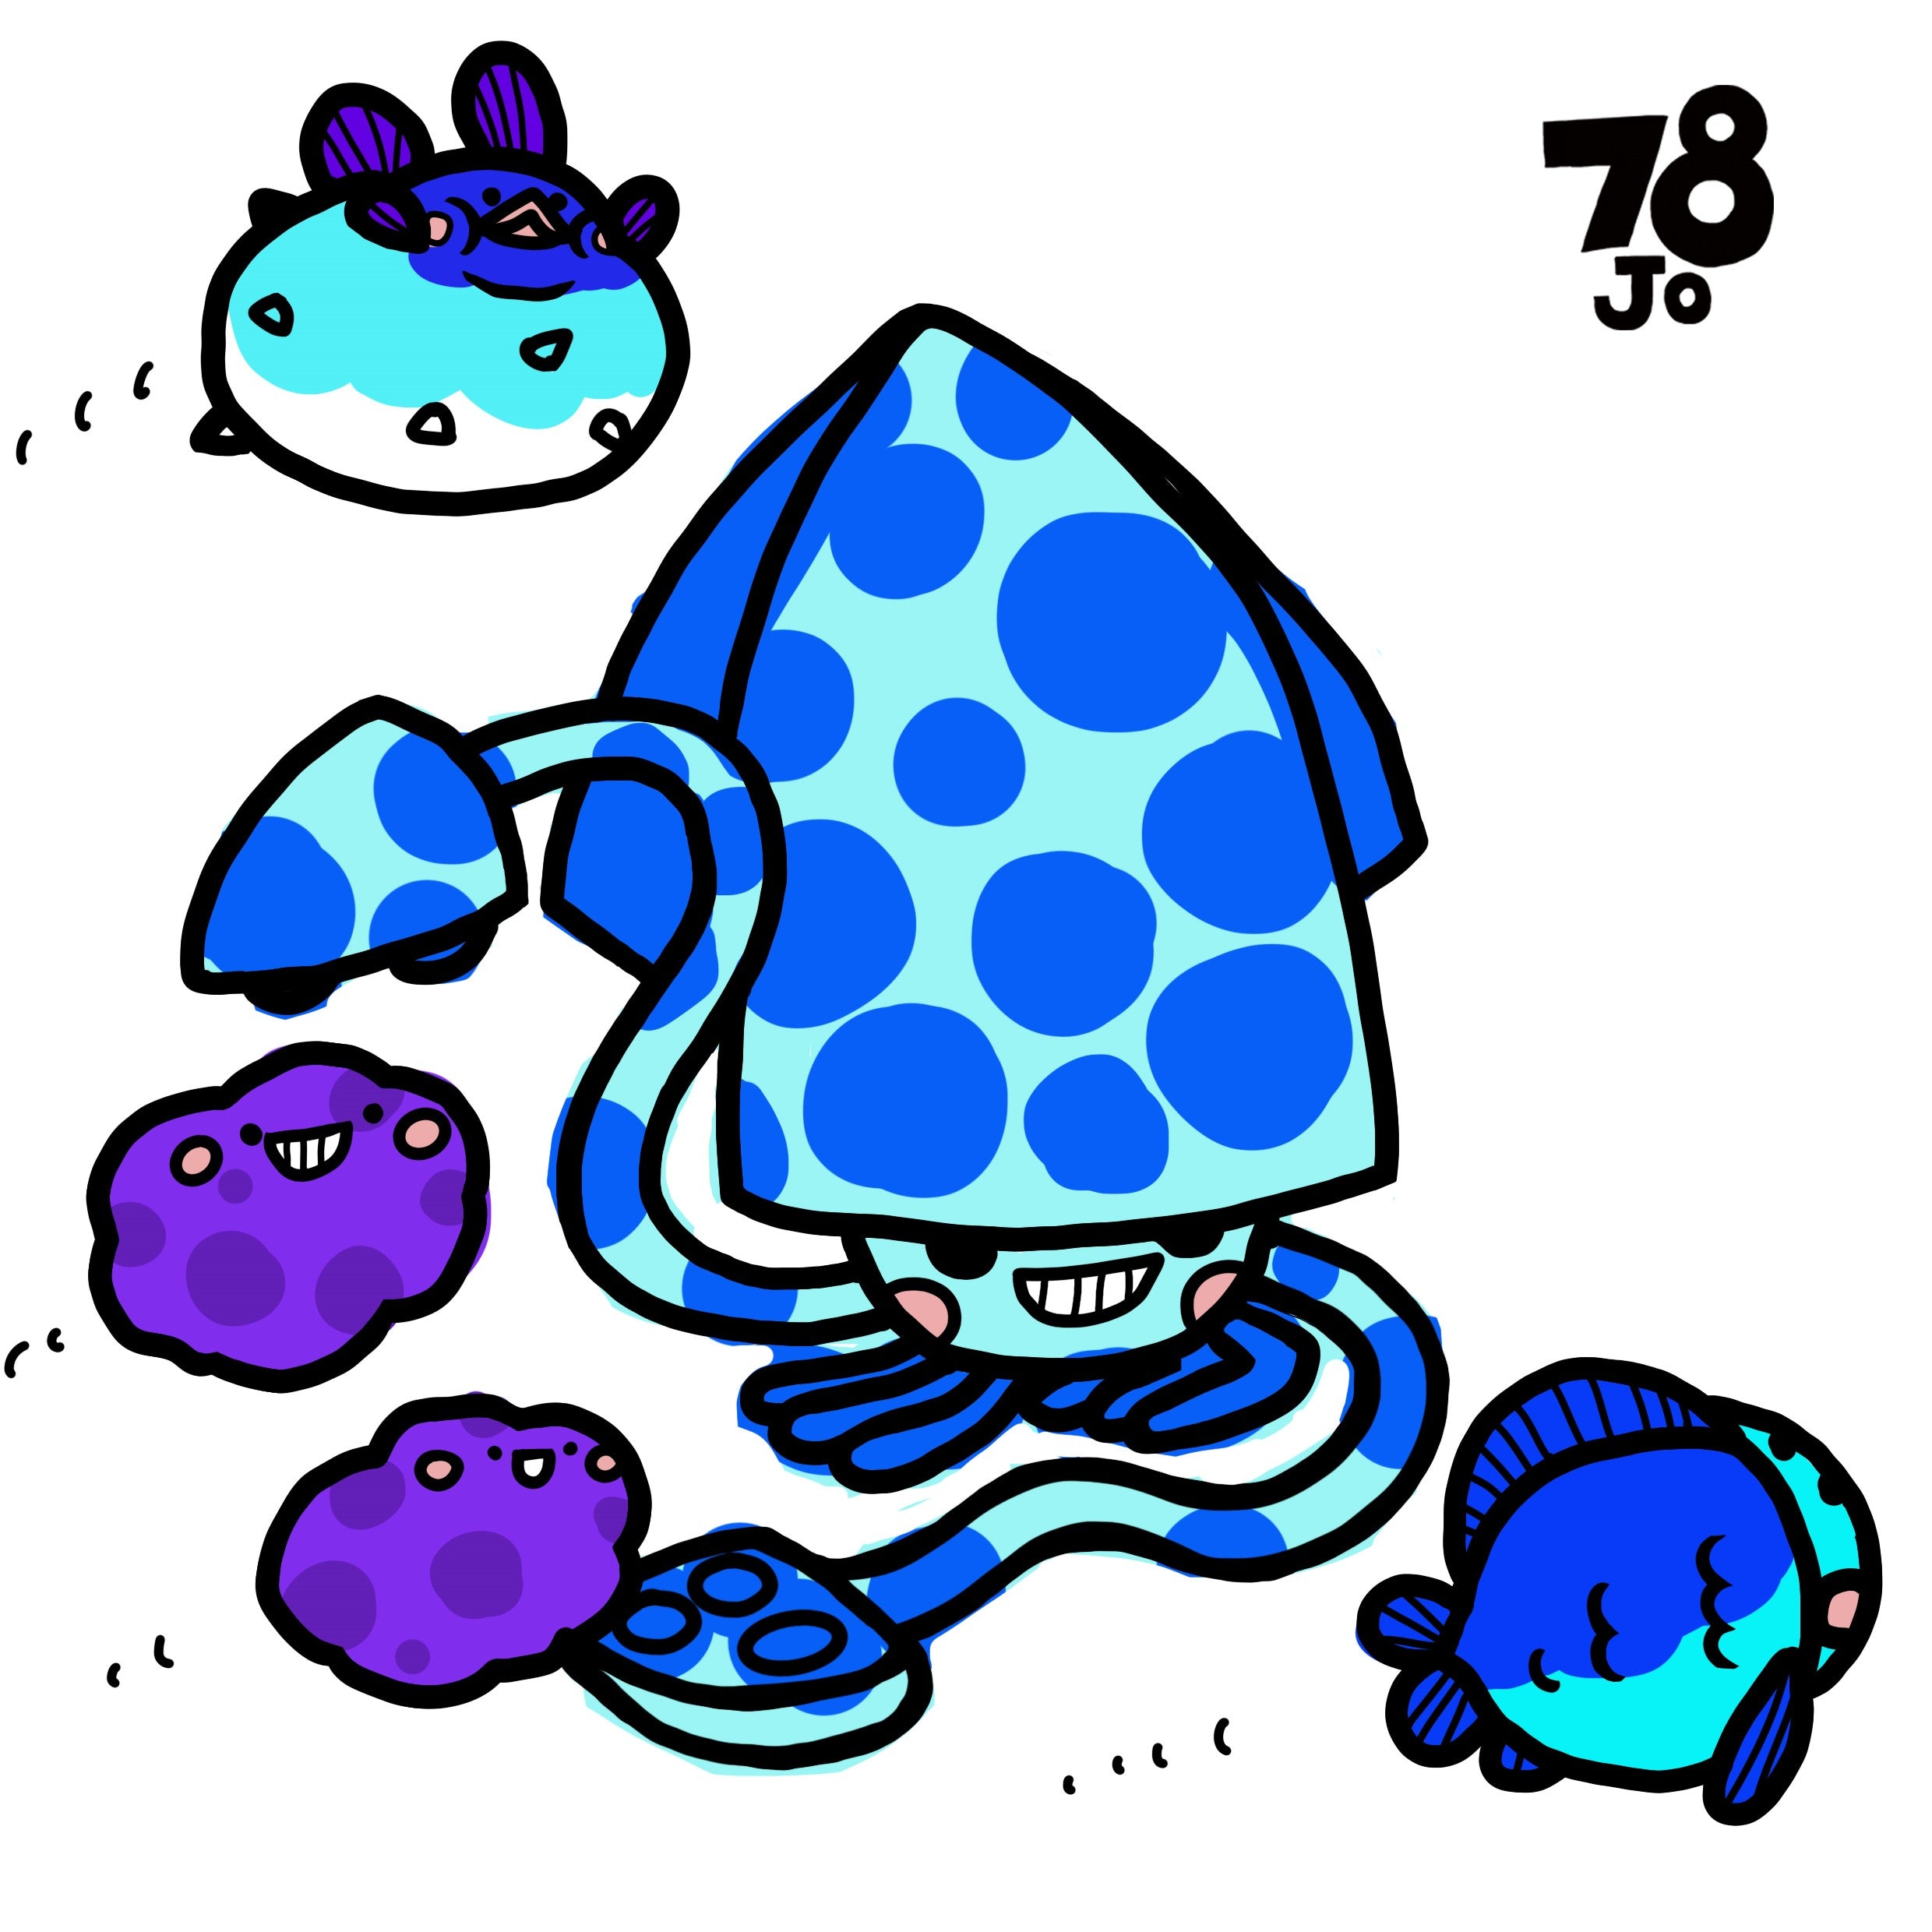 Ocean Blue Ball ball Squid by 78jo